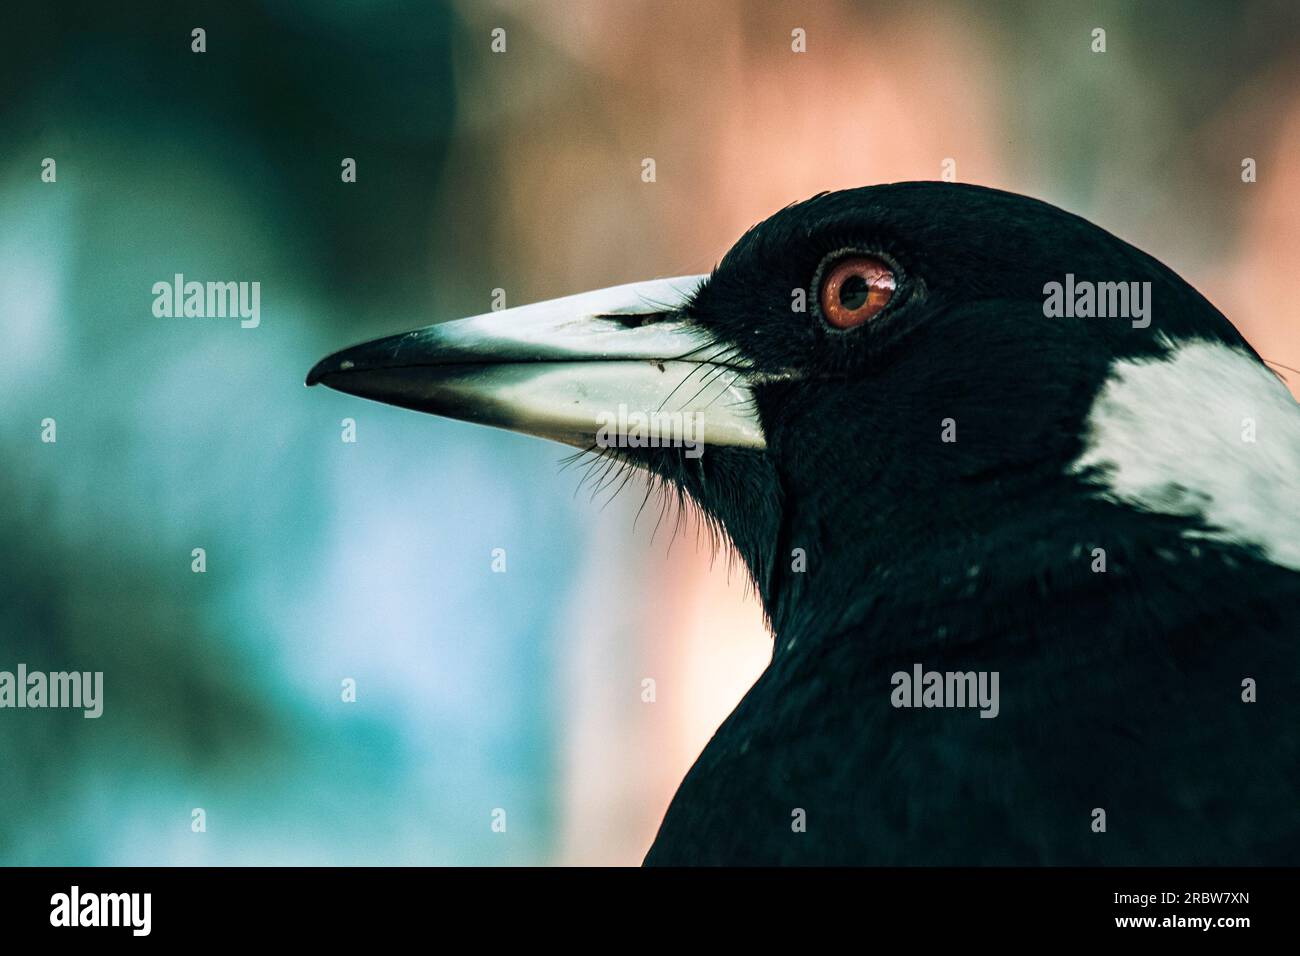 Scatti ravvicinati di uccelli australiani Foto Stock